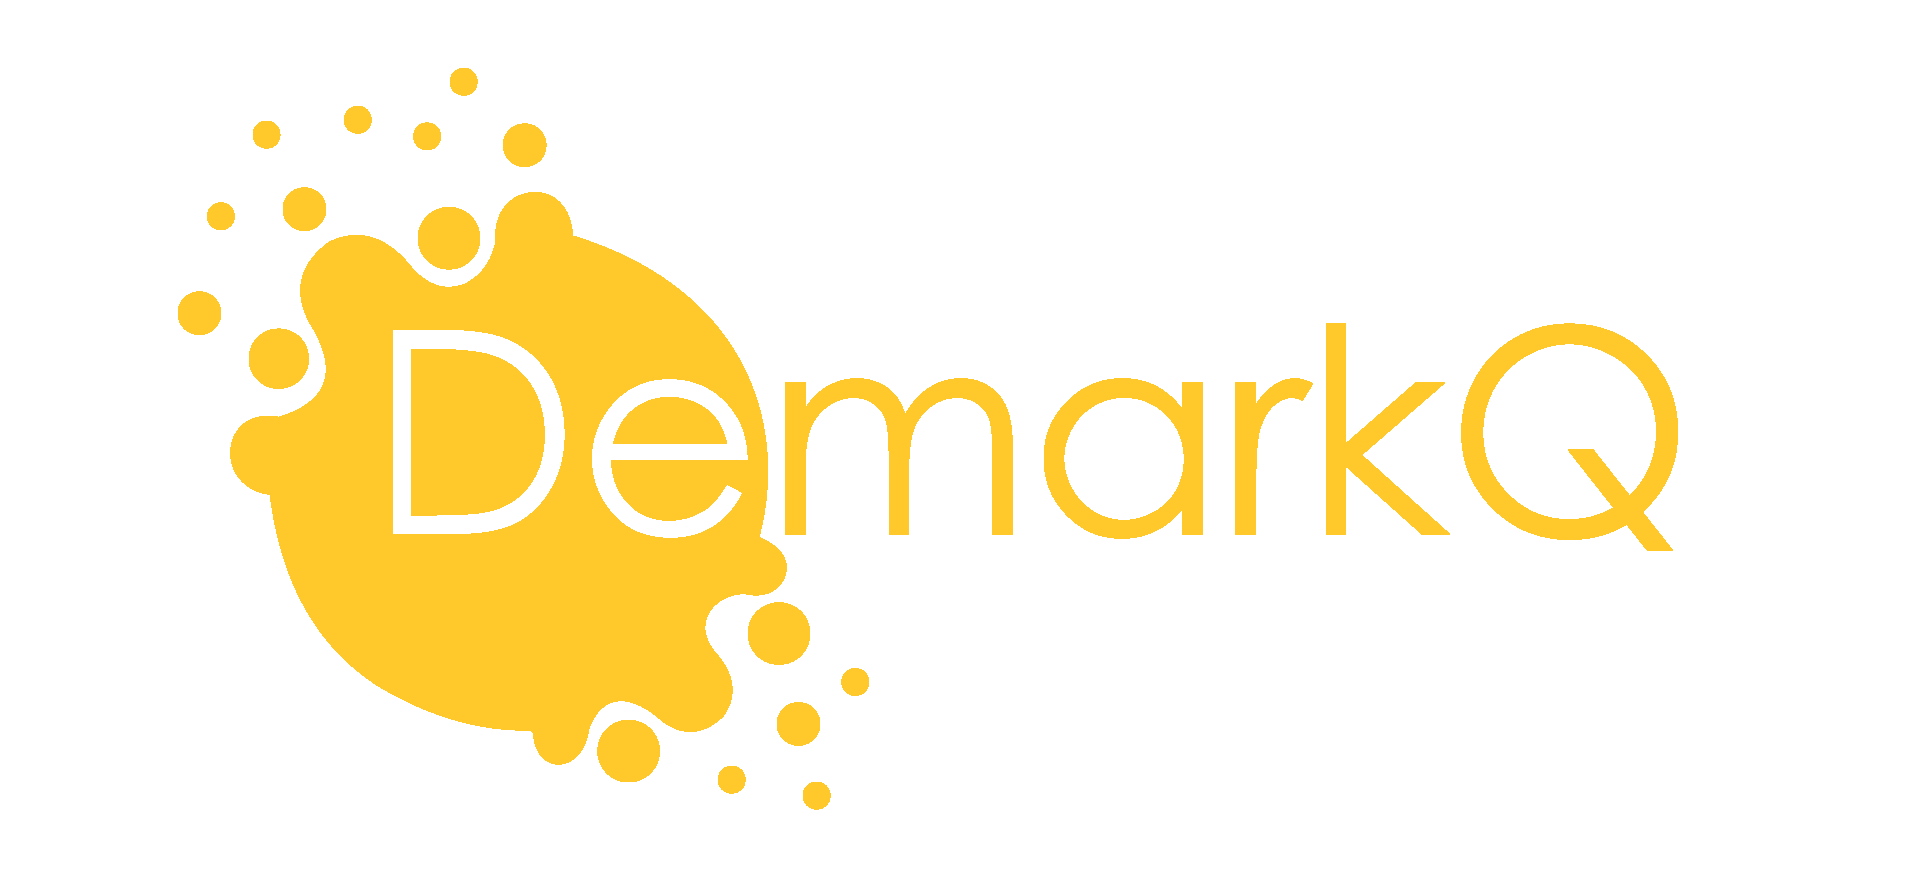 DemarkQ